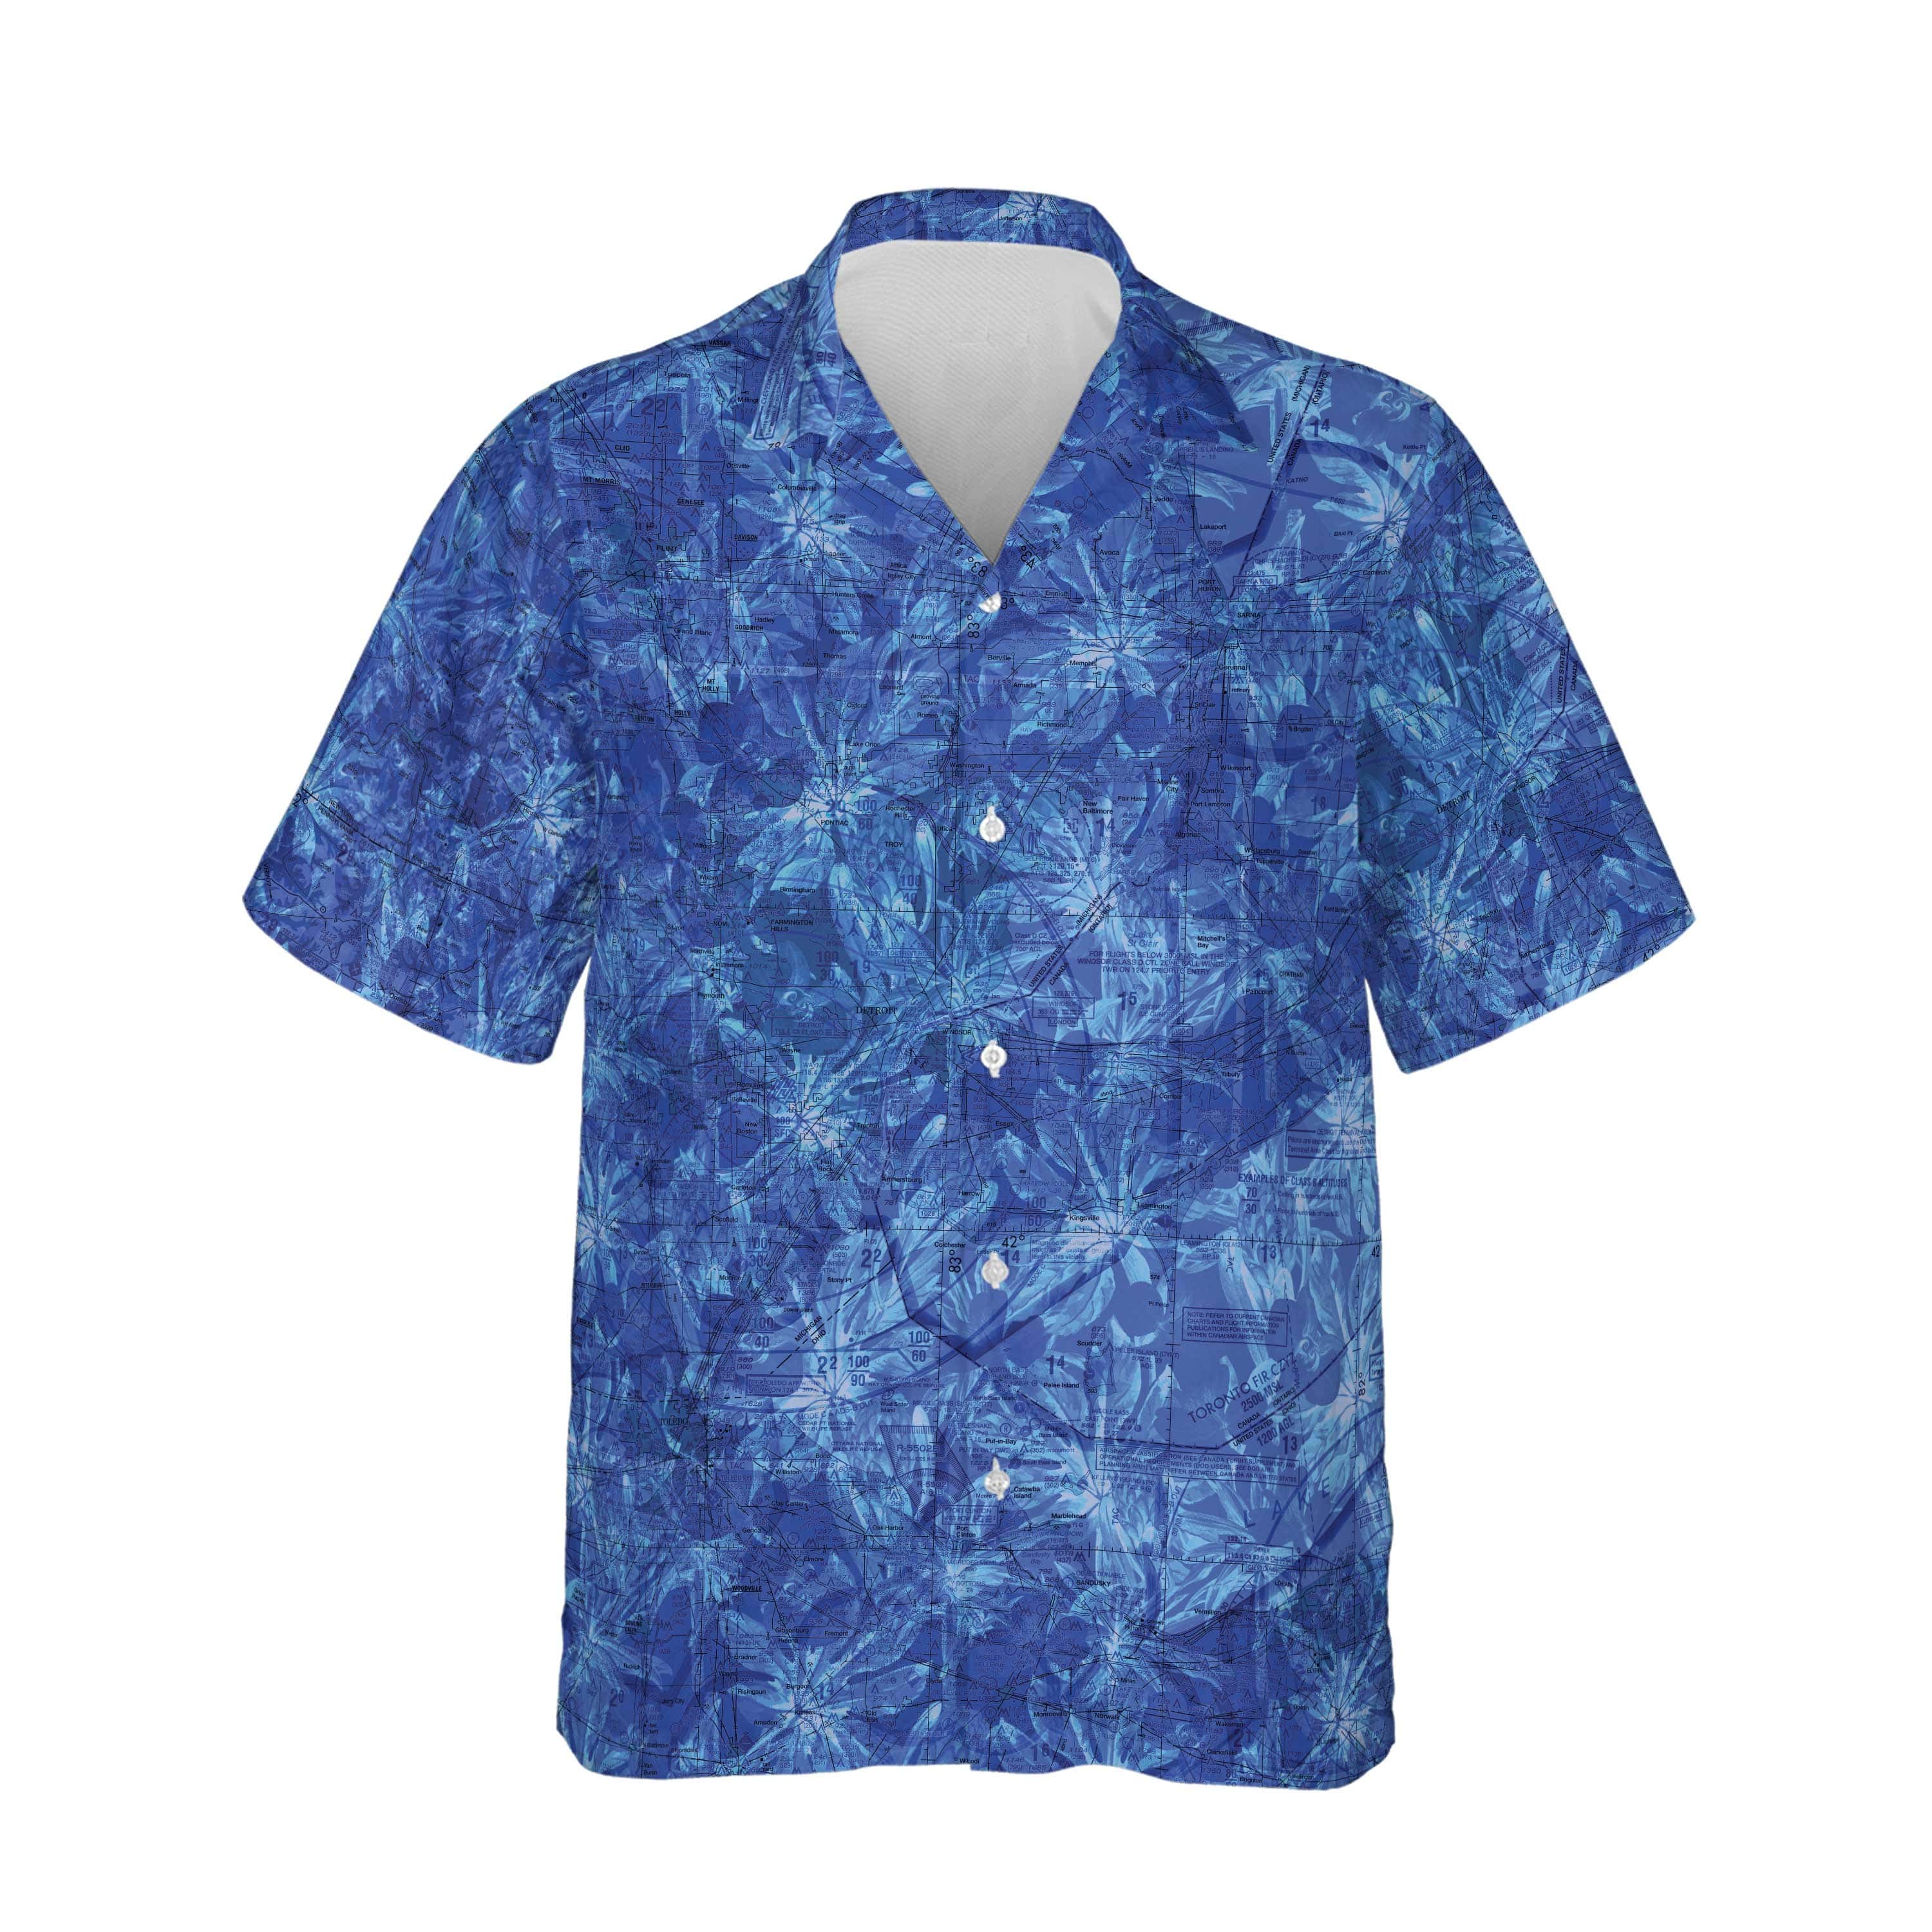 AOP Hawaiian Shirt Detroit Stealth Blue Floral Shirt